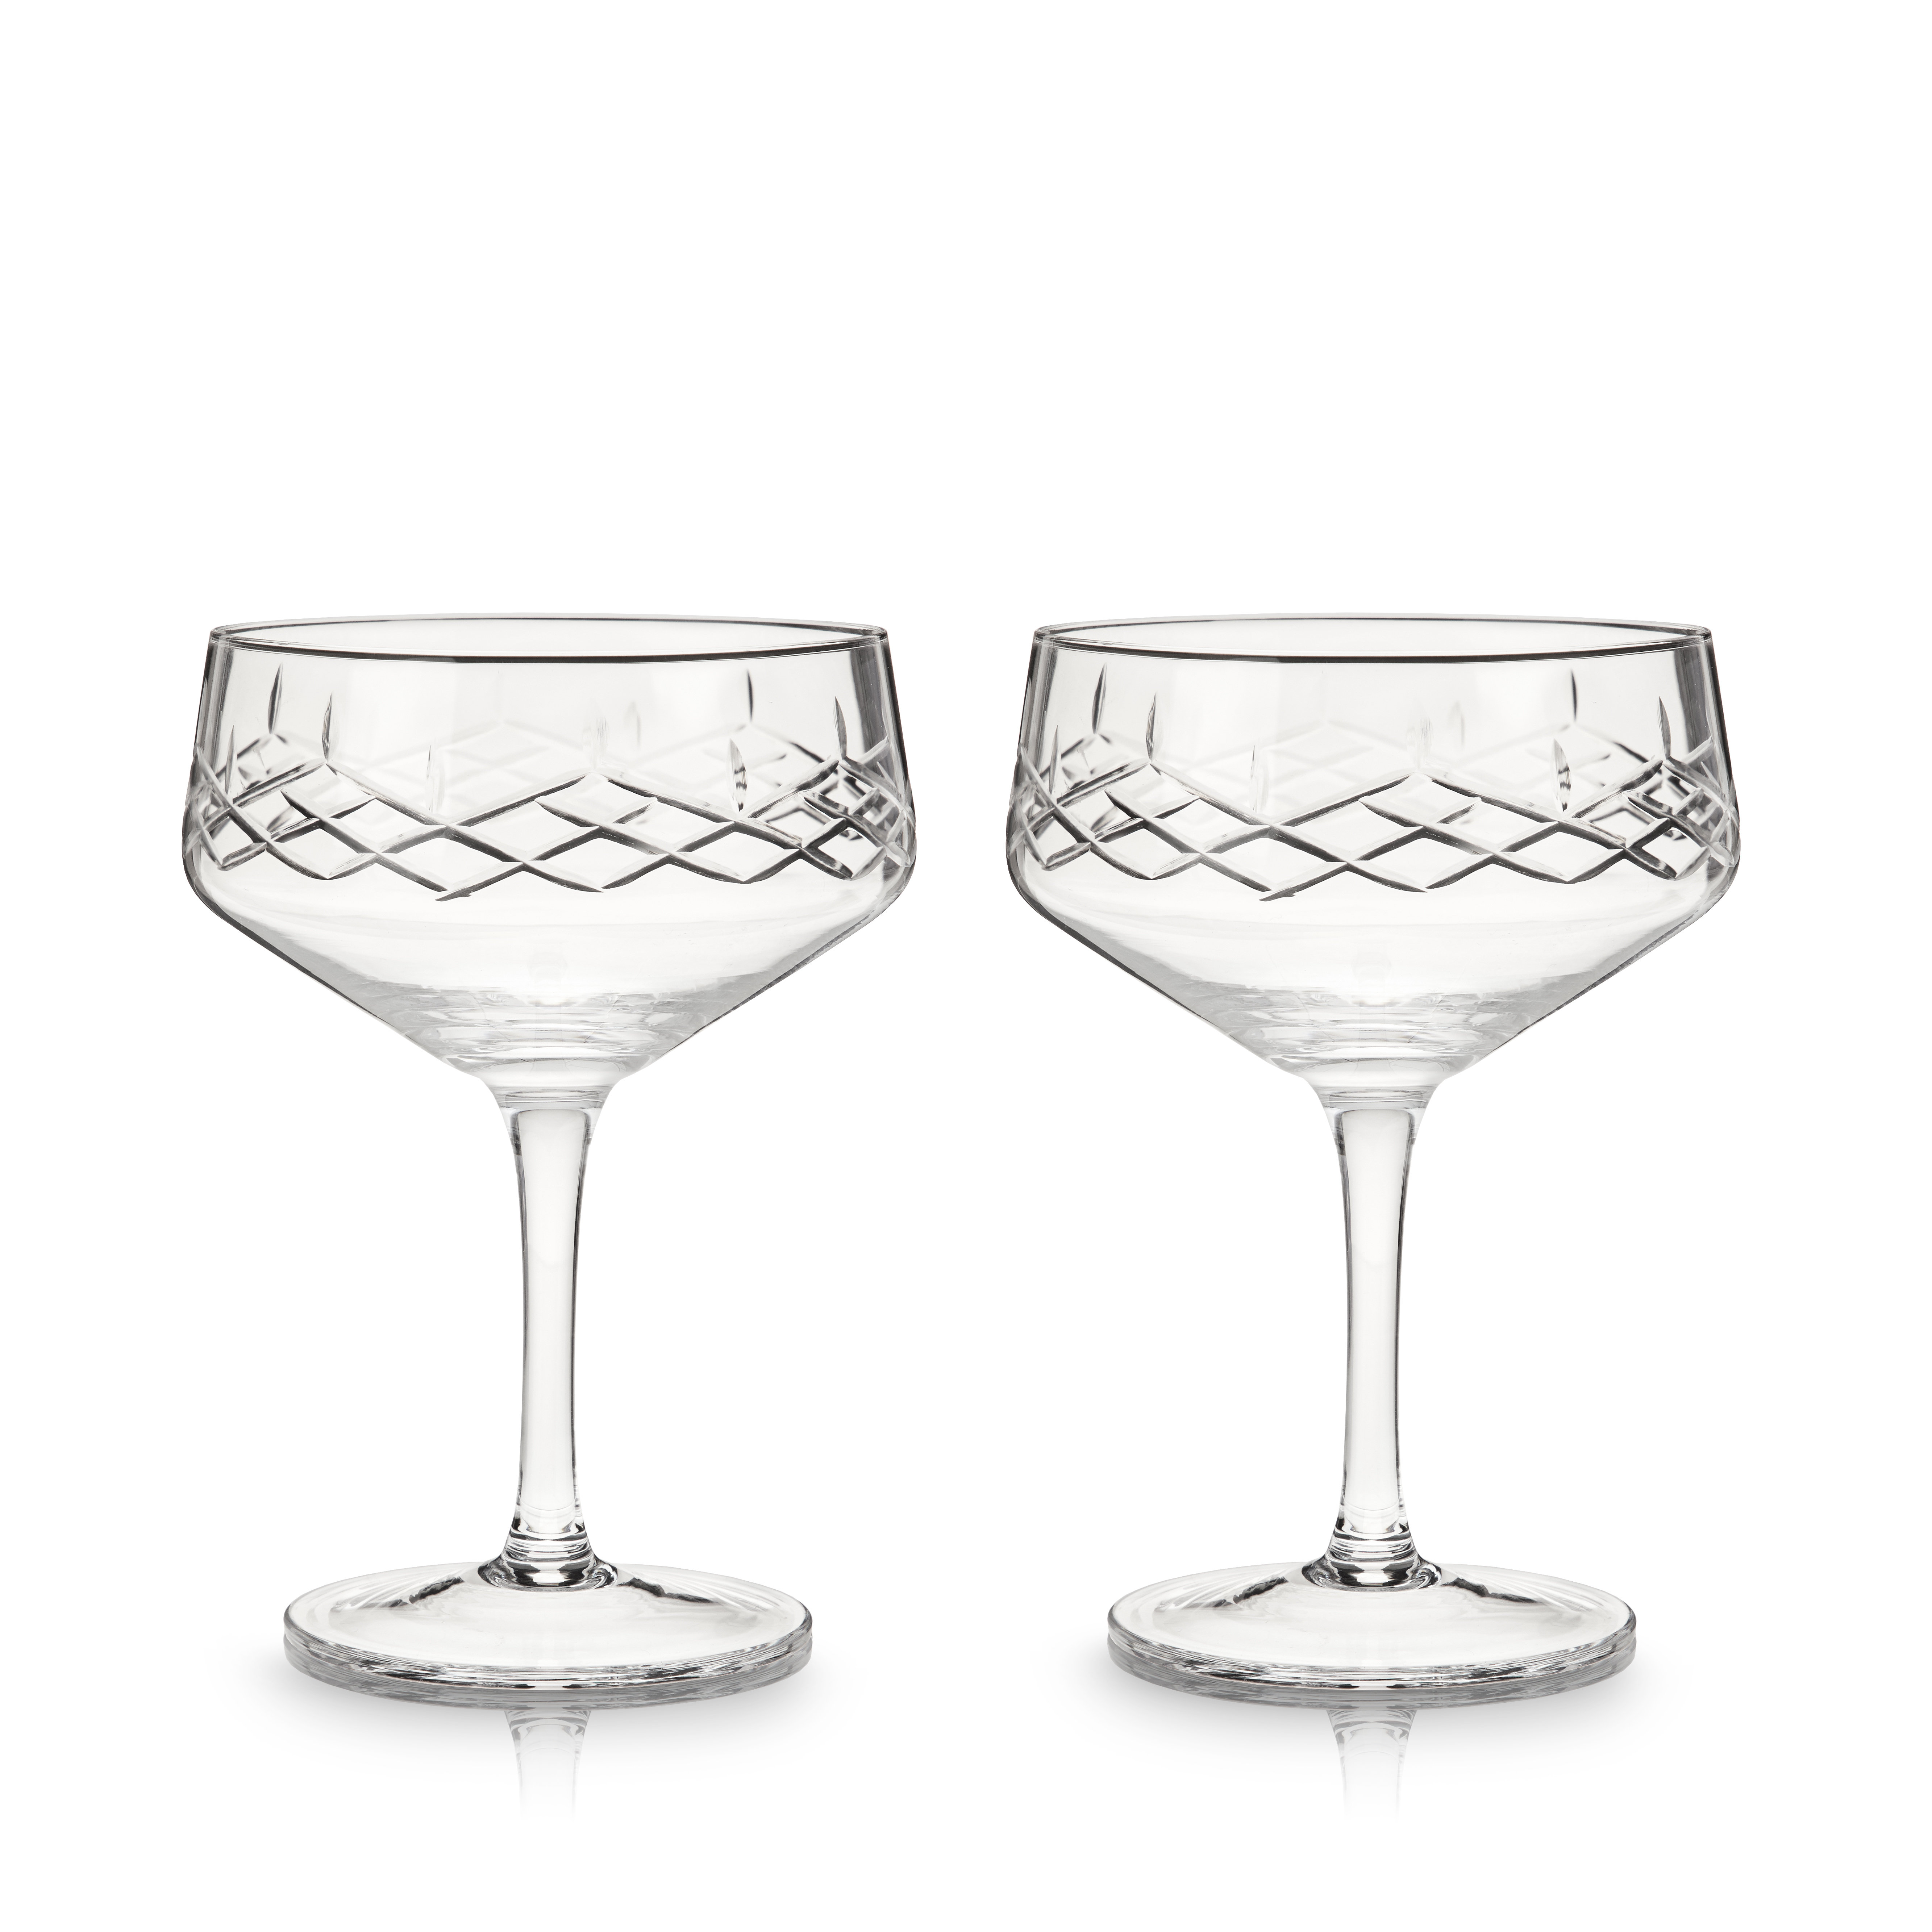 https://assets.wfcdn.com/im/88504792/compr-r85/1979/197964297/viski-admiral-coupe-glasses-set-of-2-lead-free-crystal-coupe-cocktail-glasses-stemmed-coupes-7-oz.jpg